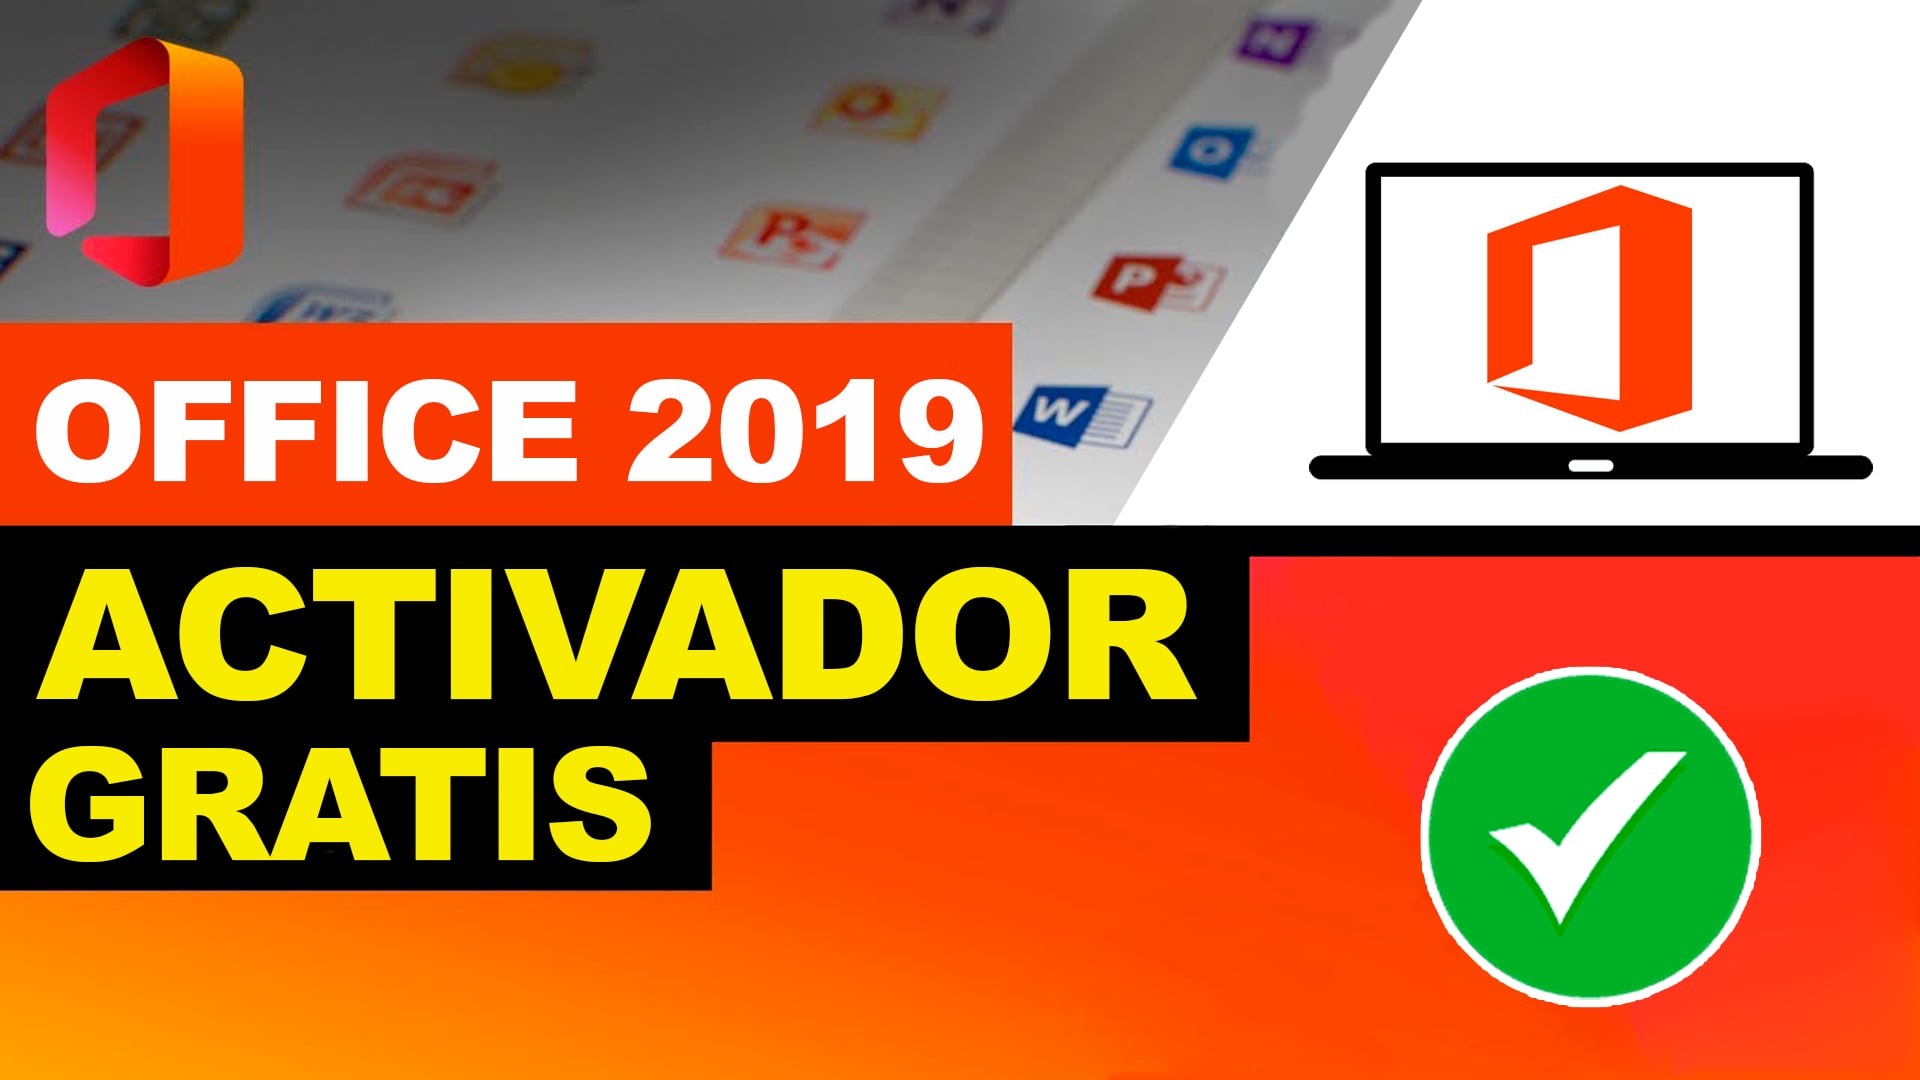 Activador Office 2019 Ratiborus Gratis Como Activar Office 2019 Activacion Office Kms Tools 9030